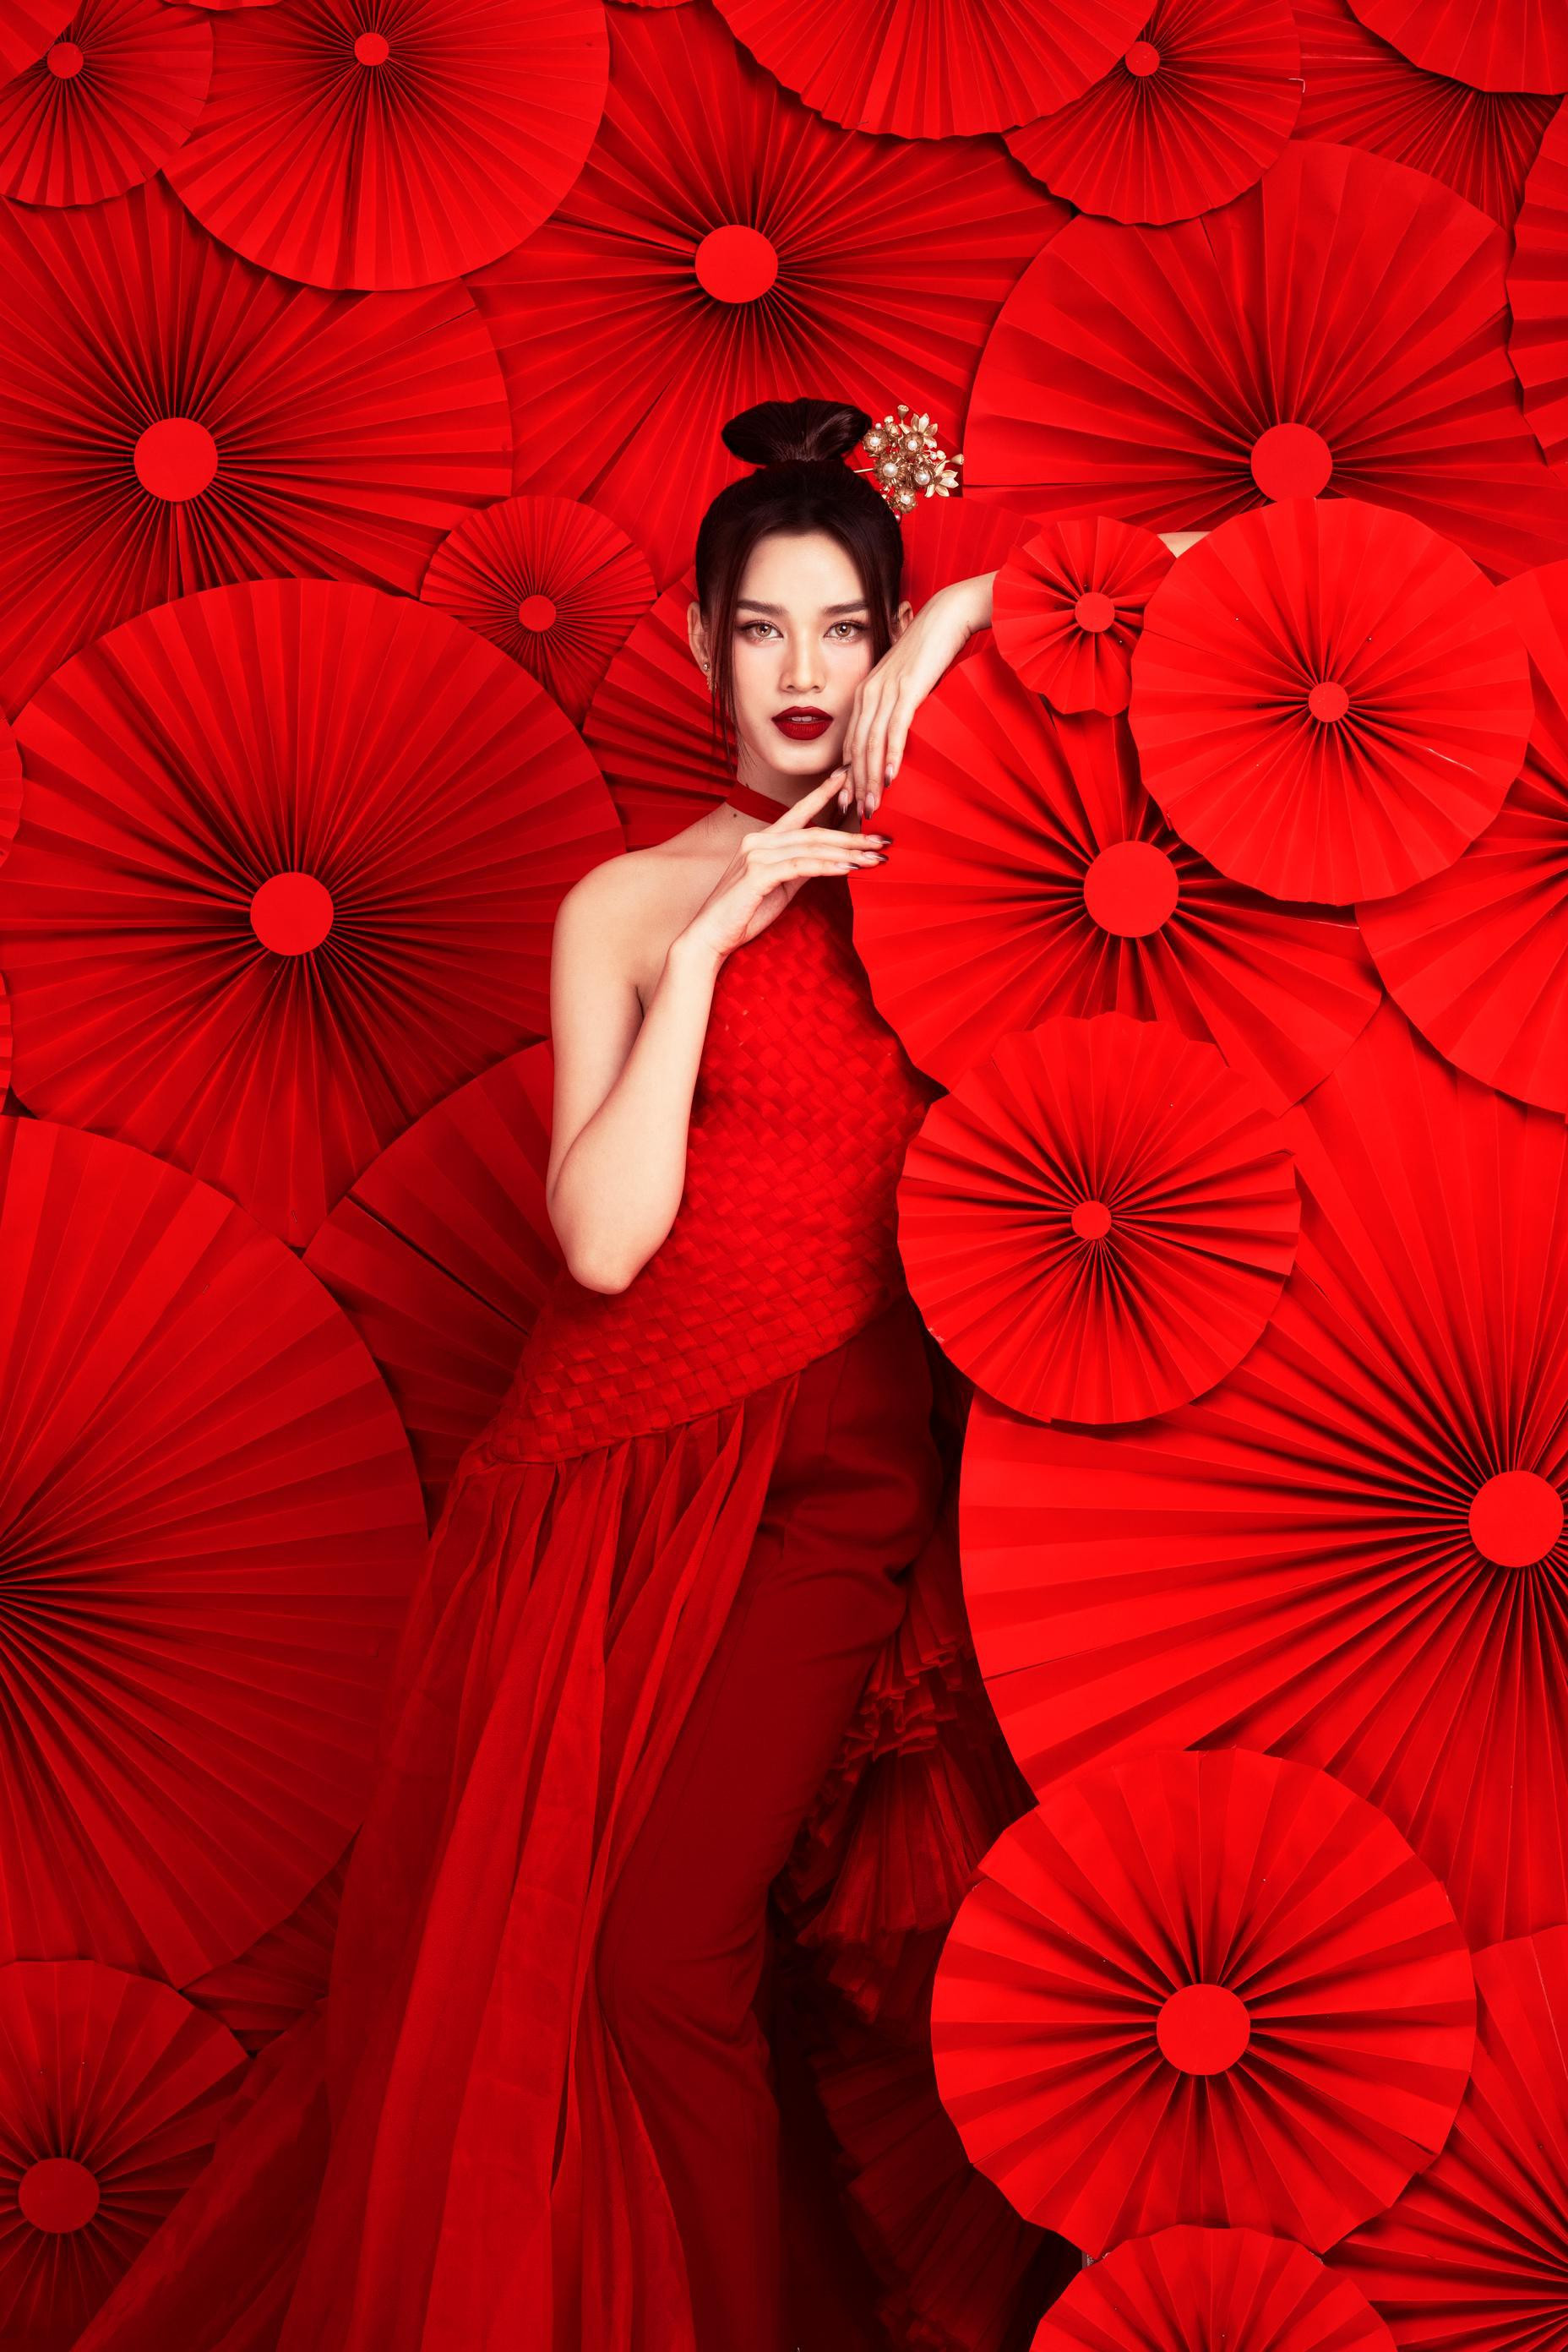 Hoa hậu Đỗ Thị Hà diện yếm đỏ, khoe lưng trần gợi cảm trong bộ ảnh Tết ảnh 5